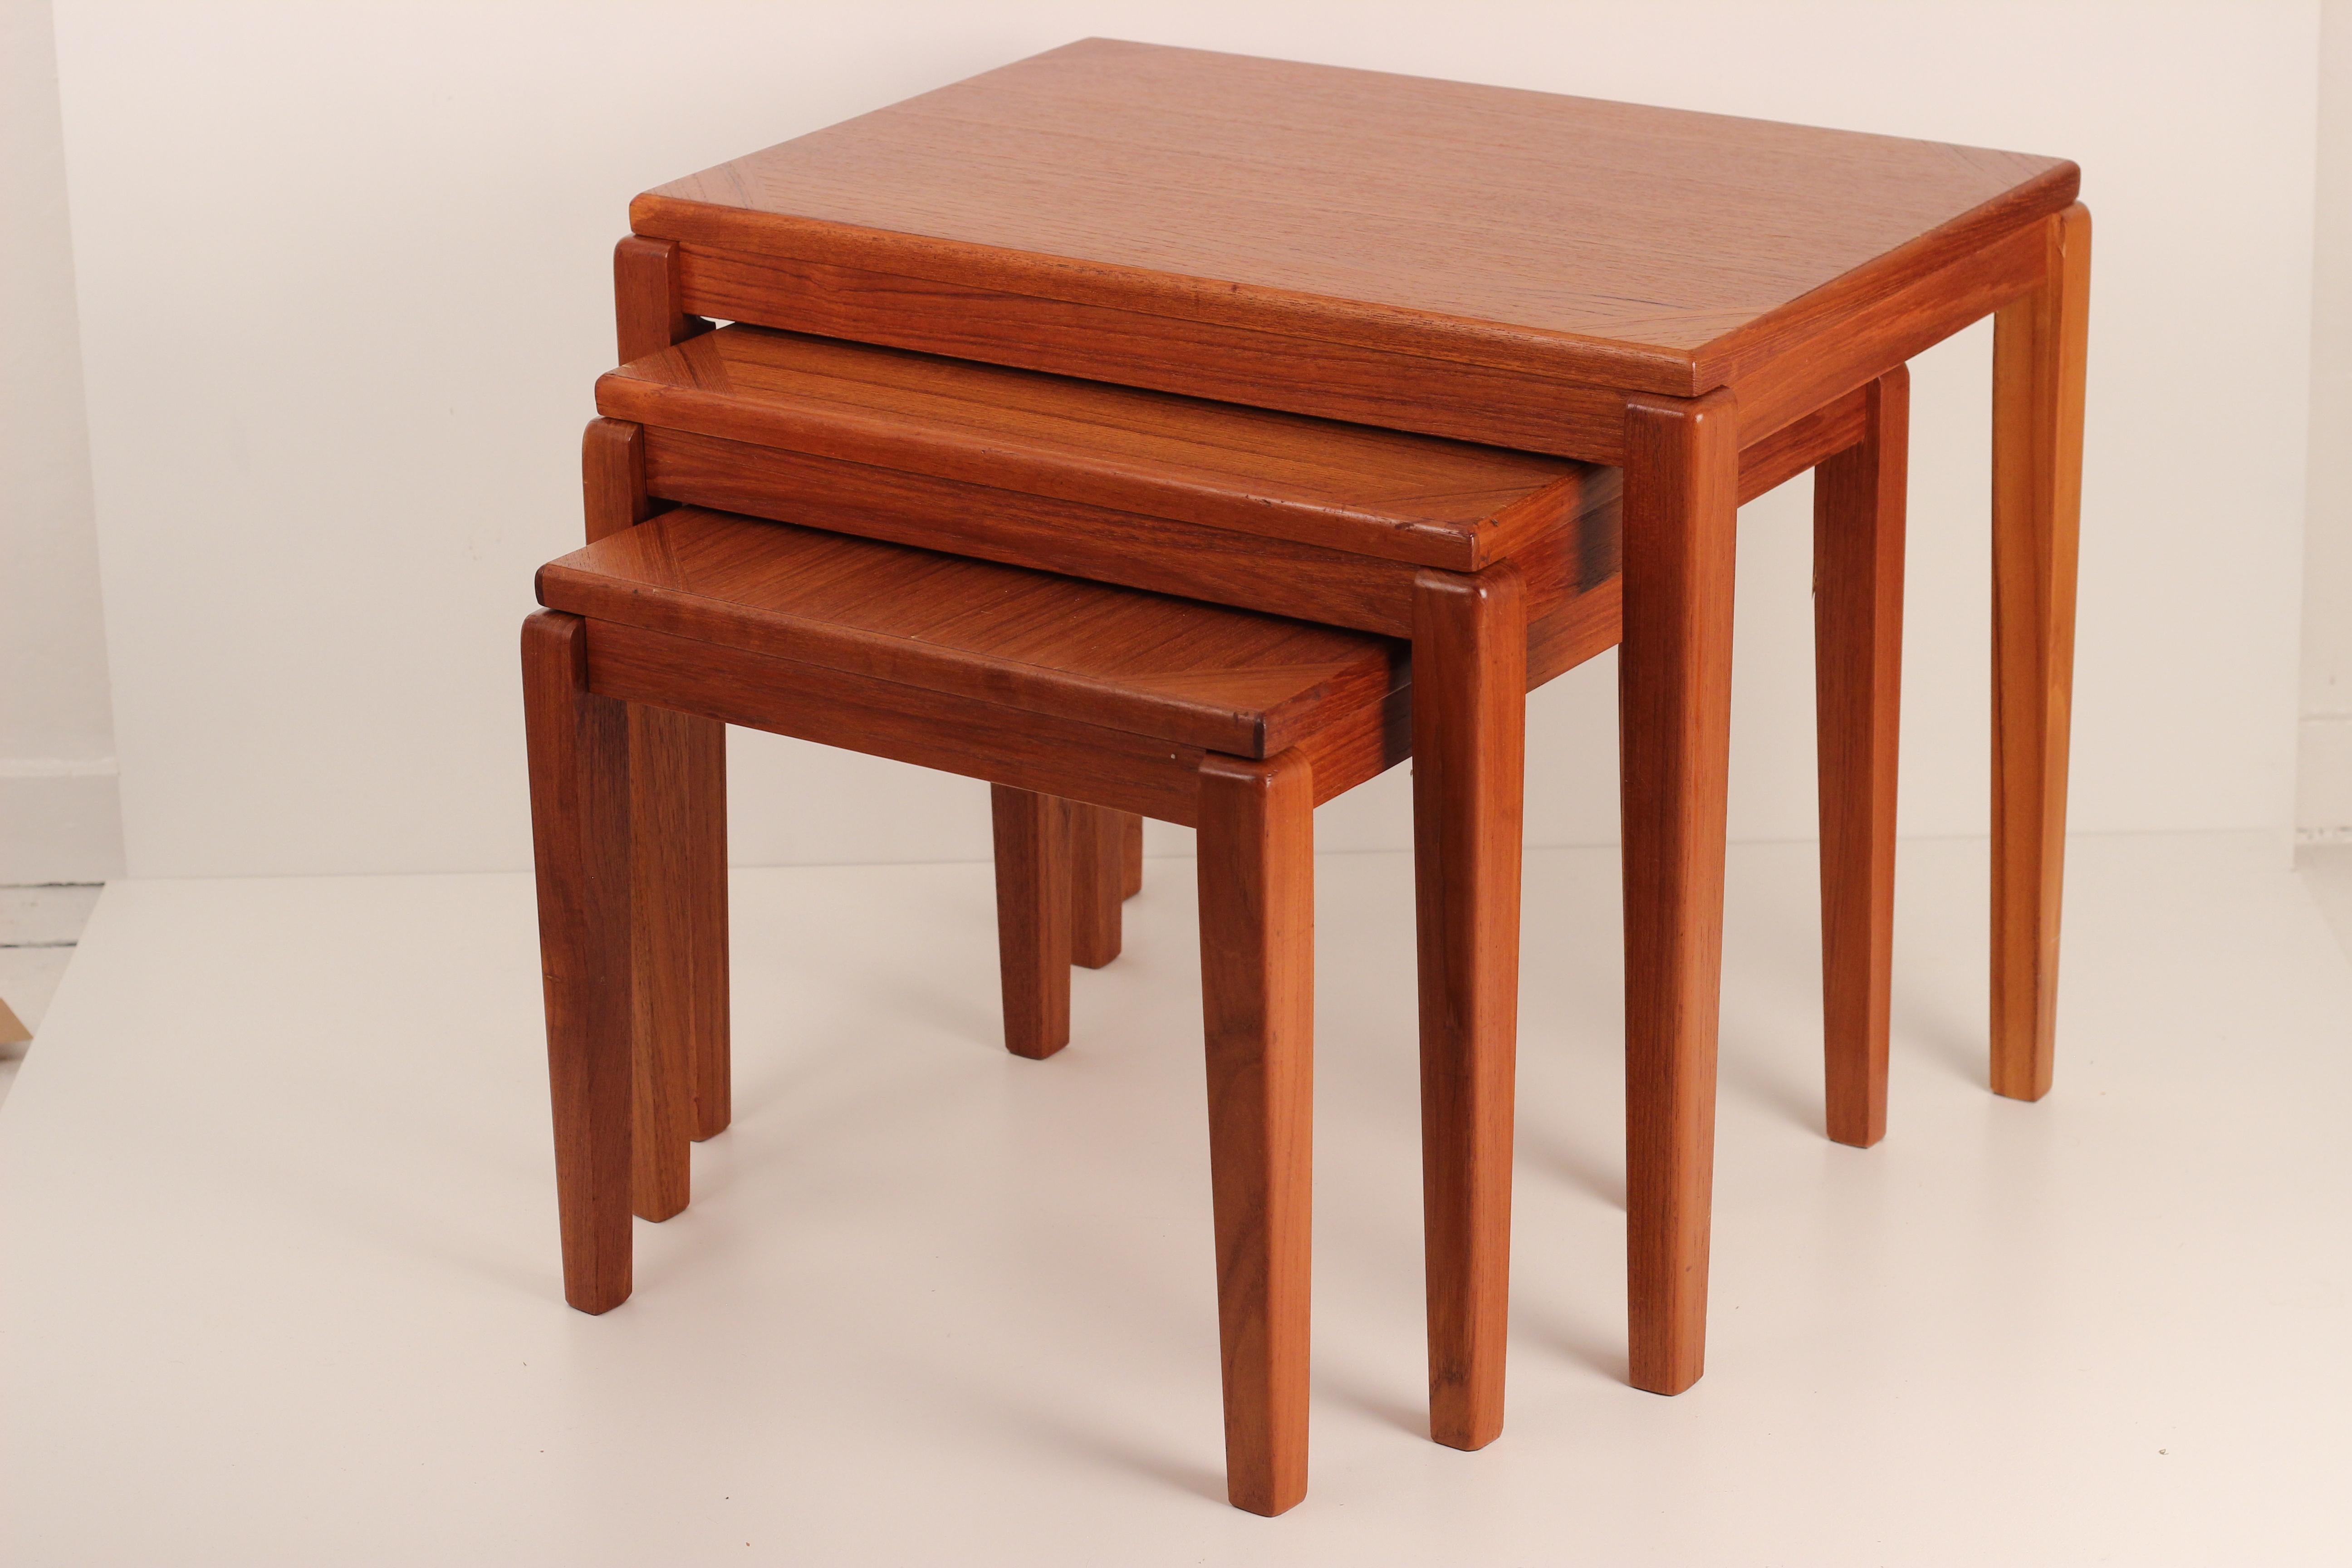 Eine einfache gepaart zurück dänischen entworfen Teak Mid-Century Modern Nest von 3 Tischen. Professionell poliert und in gutem Zustand. Die Beine dieser Tische mit ihrer feinen und interessanten Maserung und den einfachen Details sind zerlegbar und